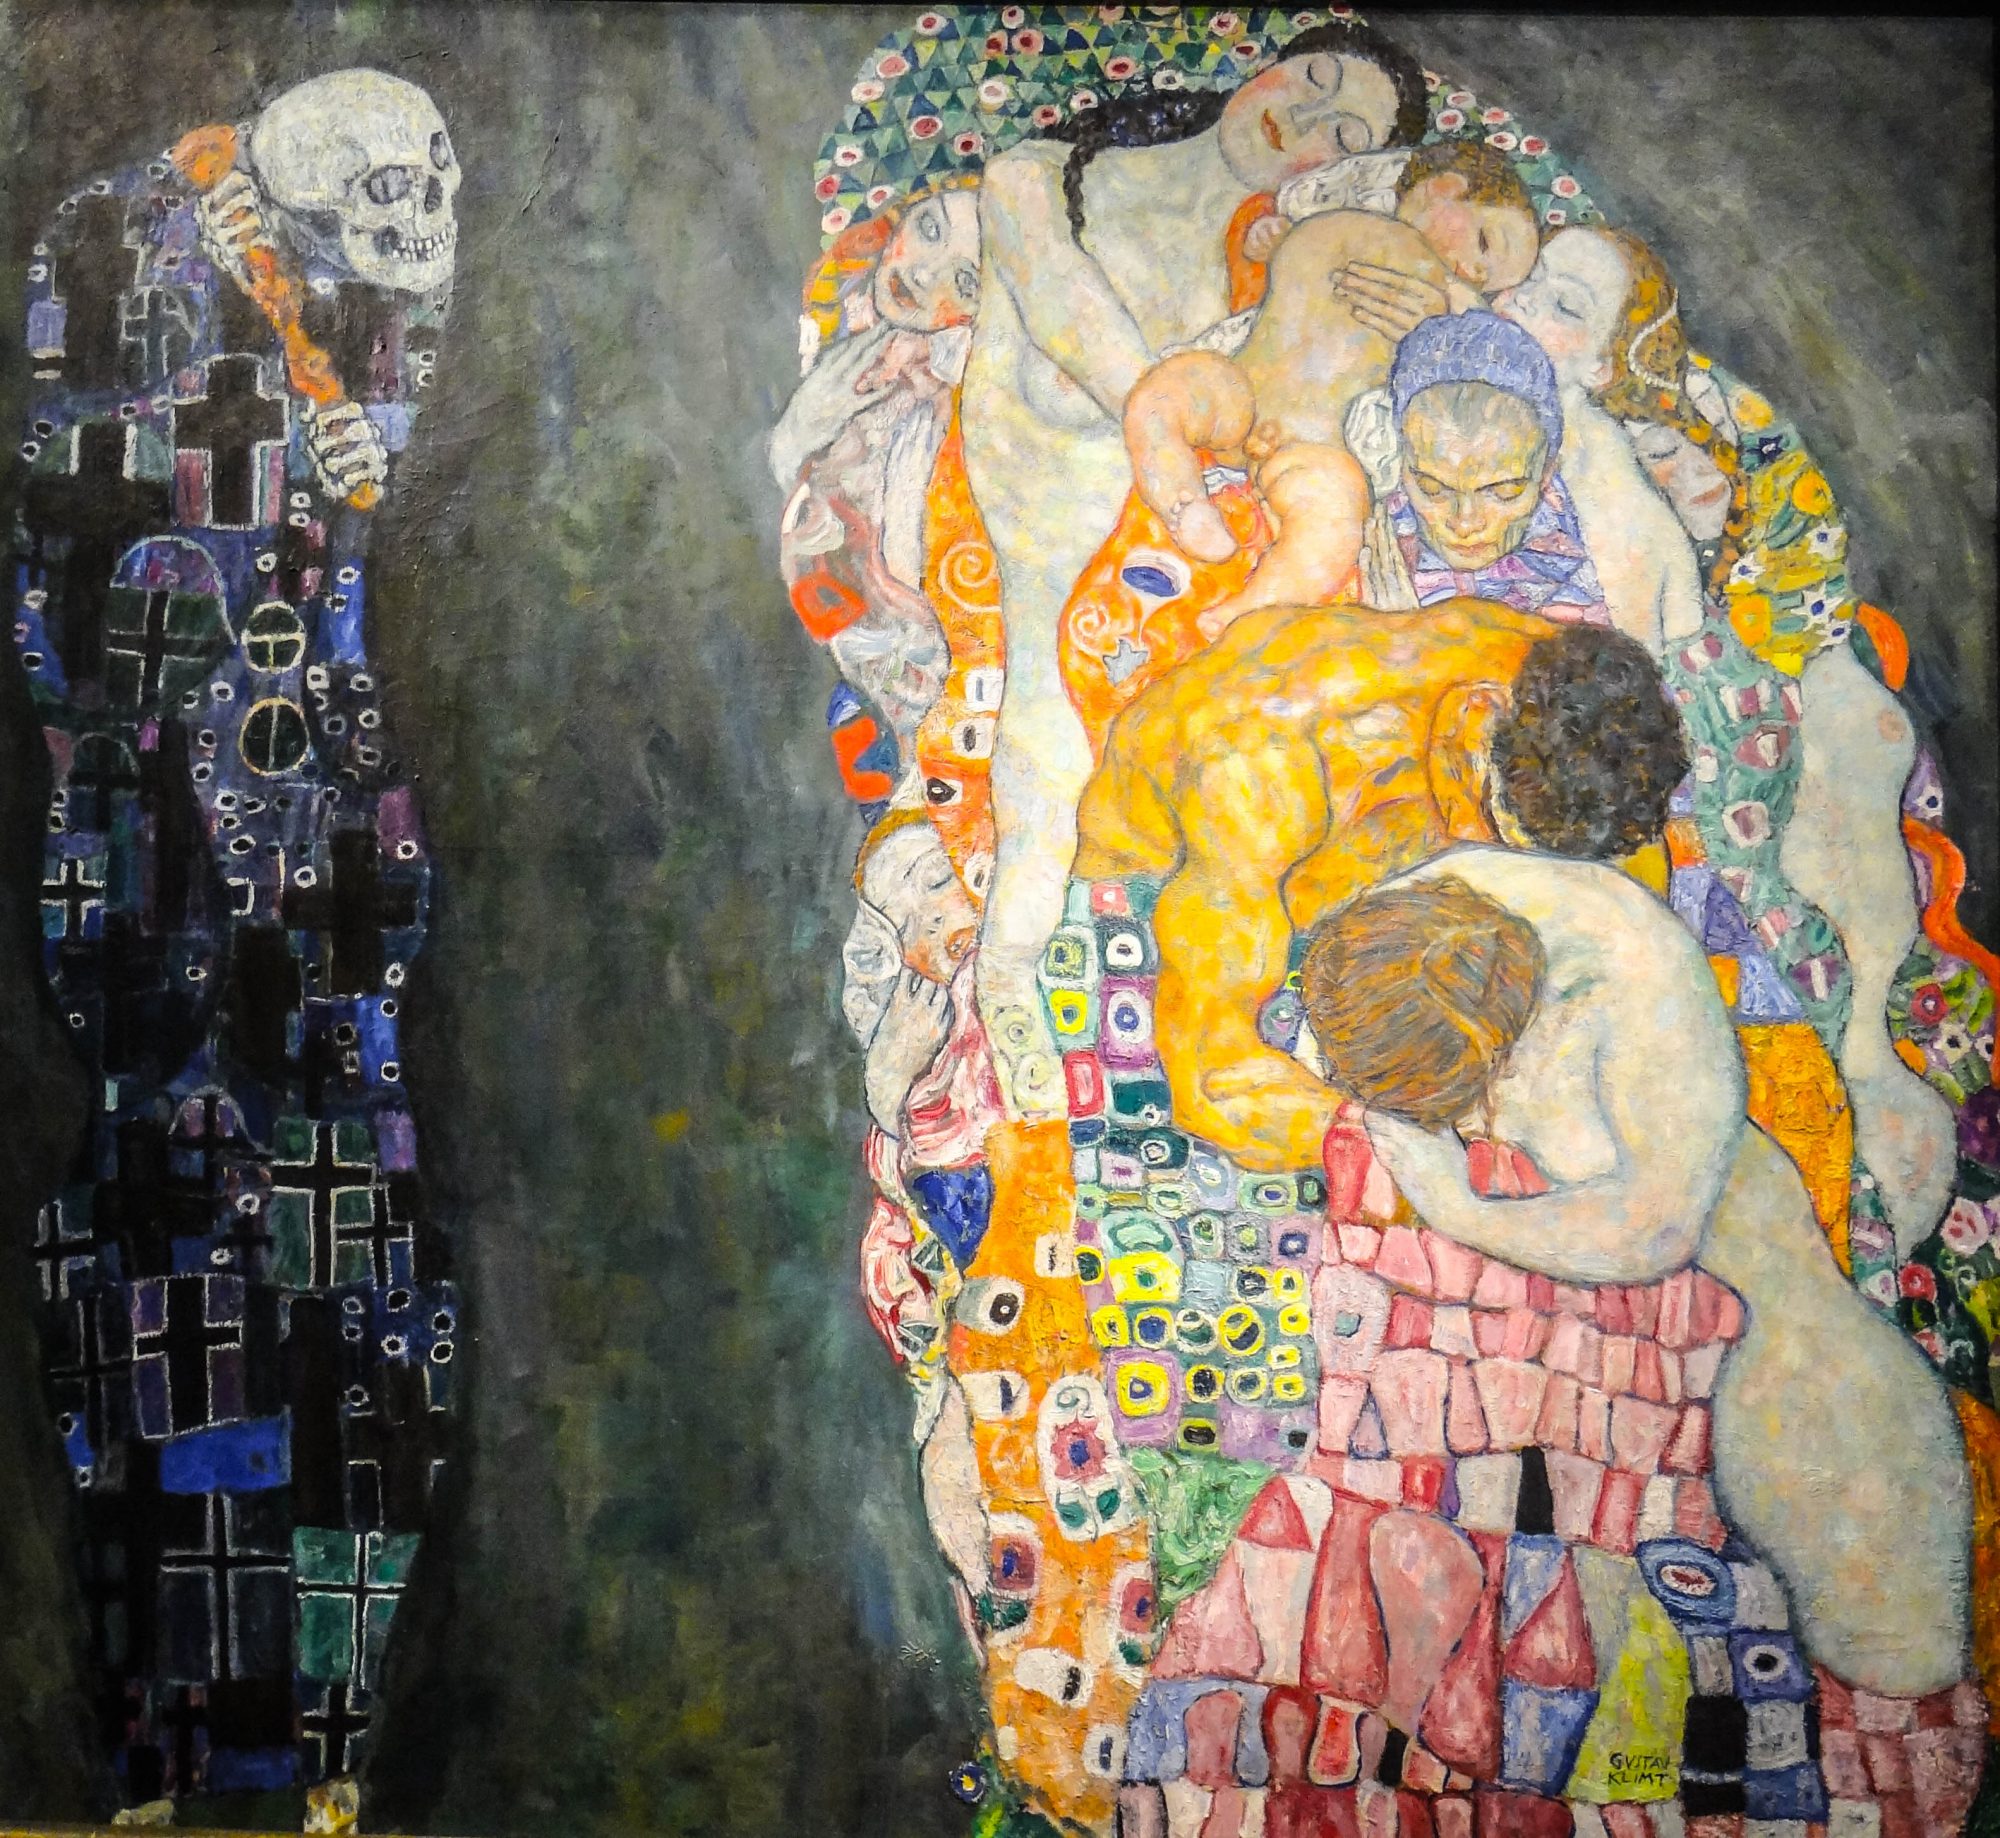 Bức tranh kinh điển “Death and Life” của danh họa người Áo Gustav Klimt